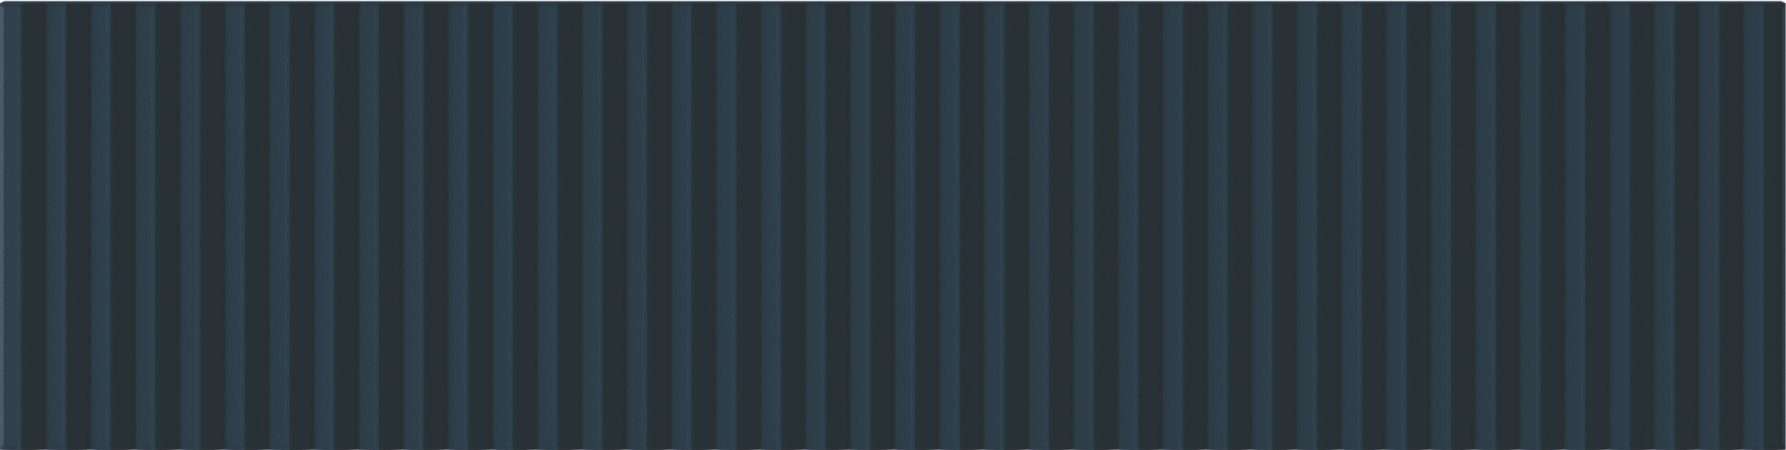 Керамическая плитка Wow Twin Peaks Low Aegean Blue 131564, цвет синий, поверхность матовая 3d (объёмная), под кирпич, 75x300